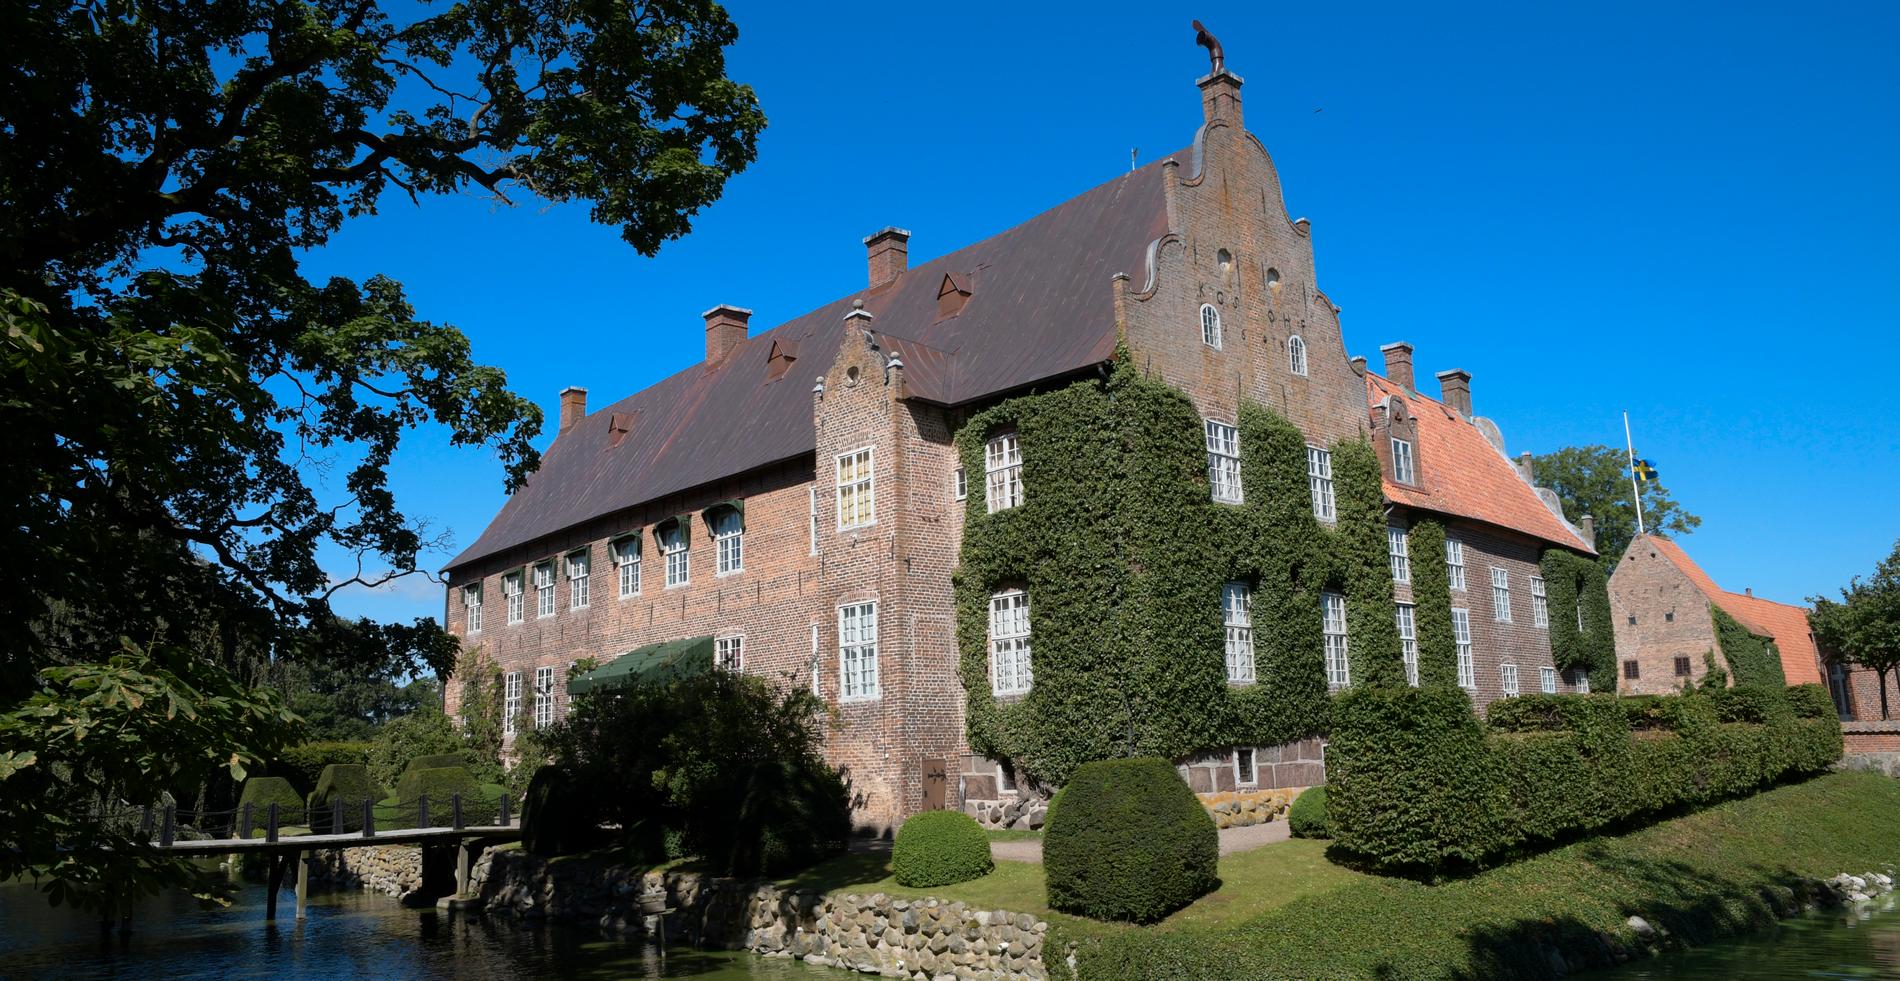 Trolle Ljungby slott och fideikommiss har anor från 1300-talet. Det har funnits inom släkten Wachtmeister sedan 1800-talet.